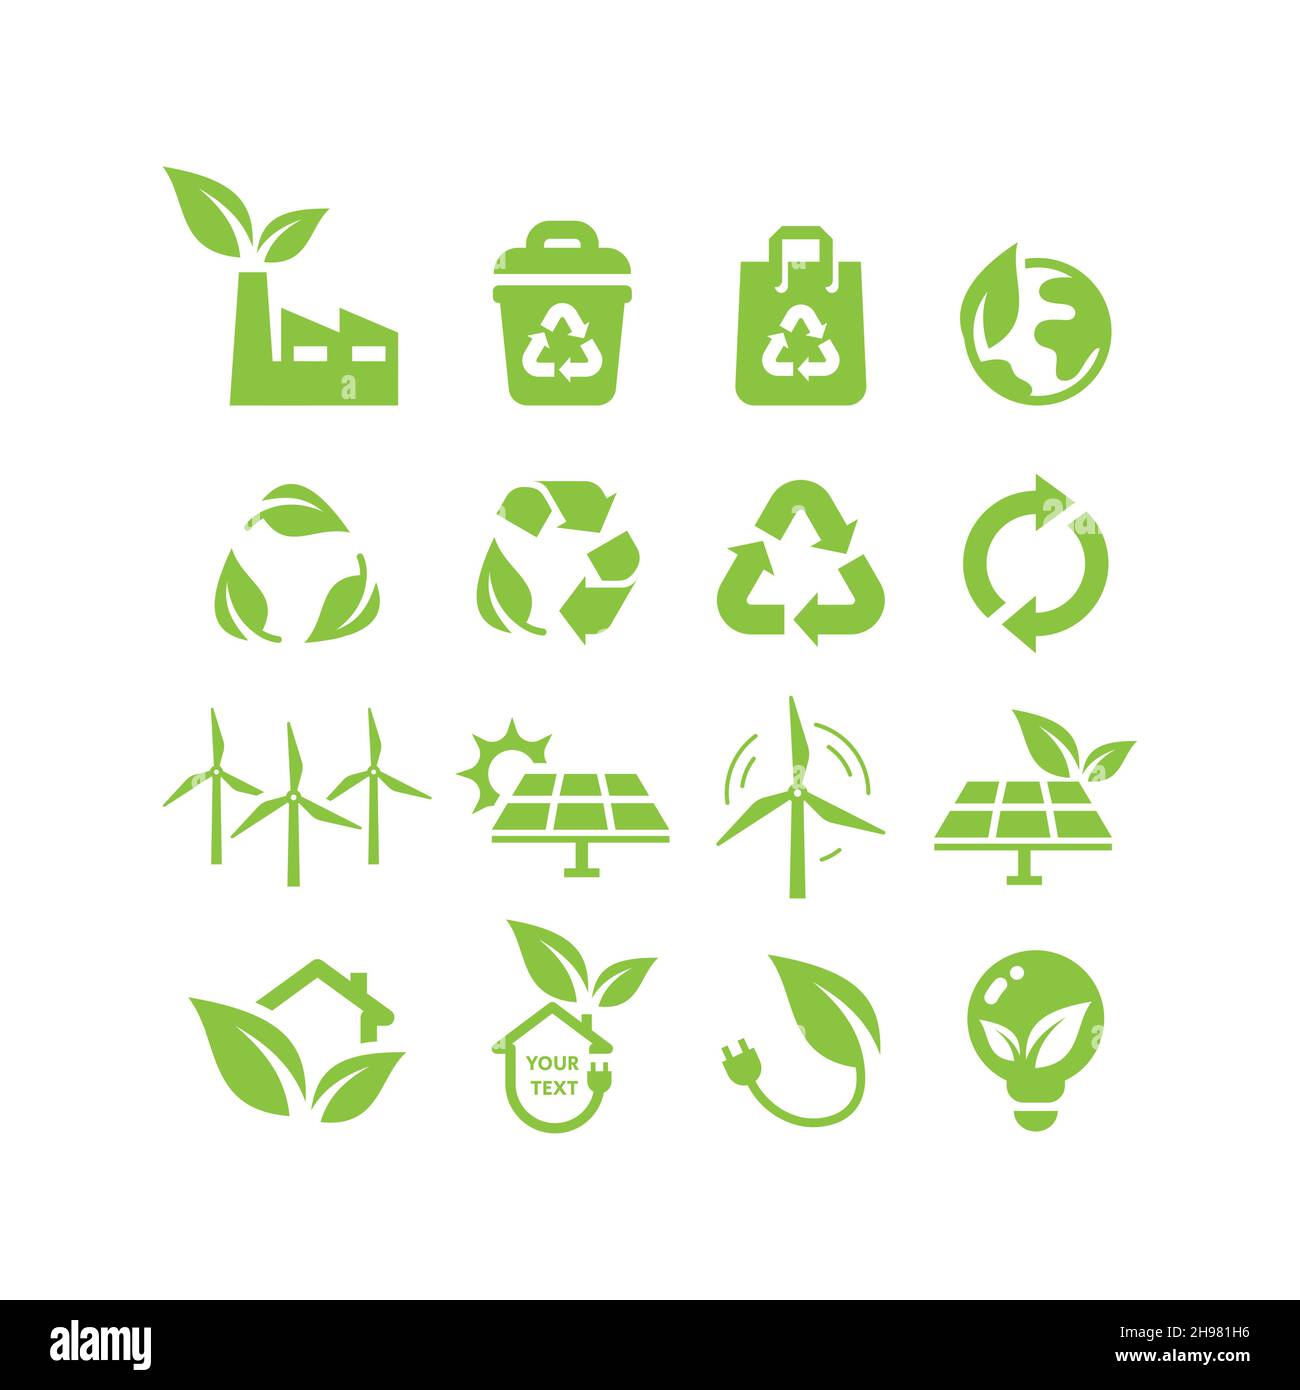 Grüne Energie, umweltfreundlicher Leistungsvektor-Symbolsatz. Solarpanel, Windturbine, recycelte Symbole für erneuerbare Energien. Stock Vektor